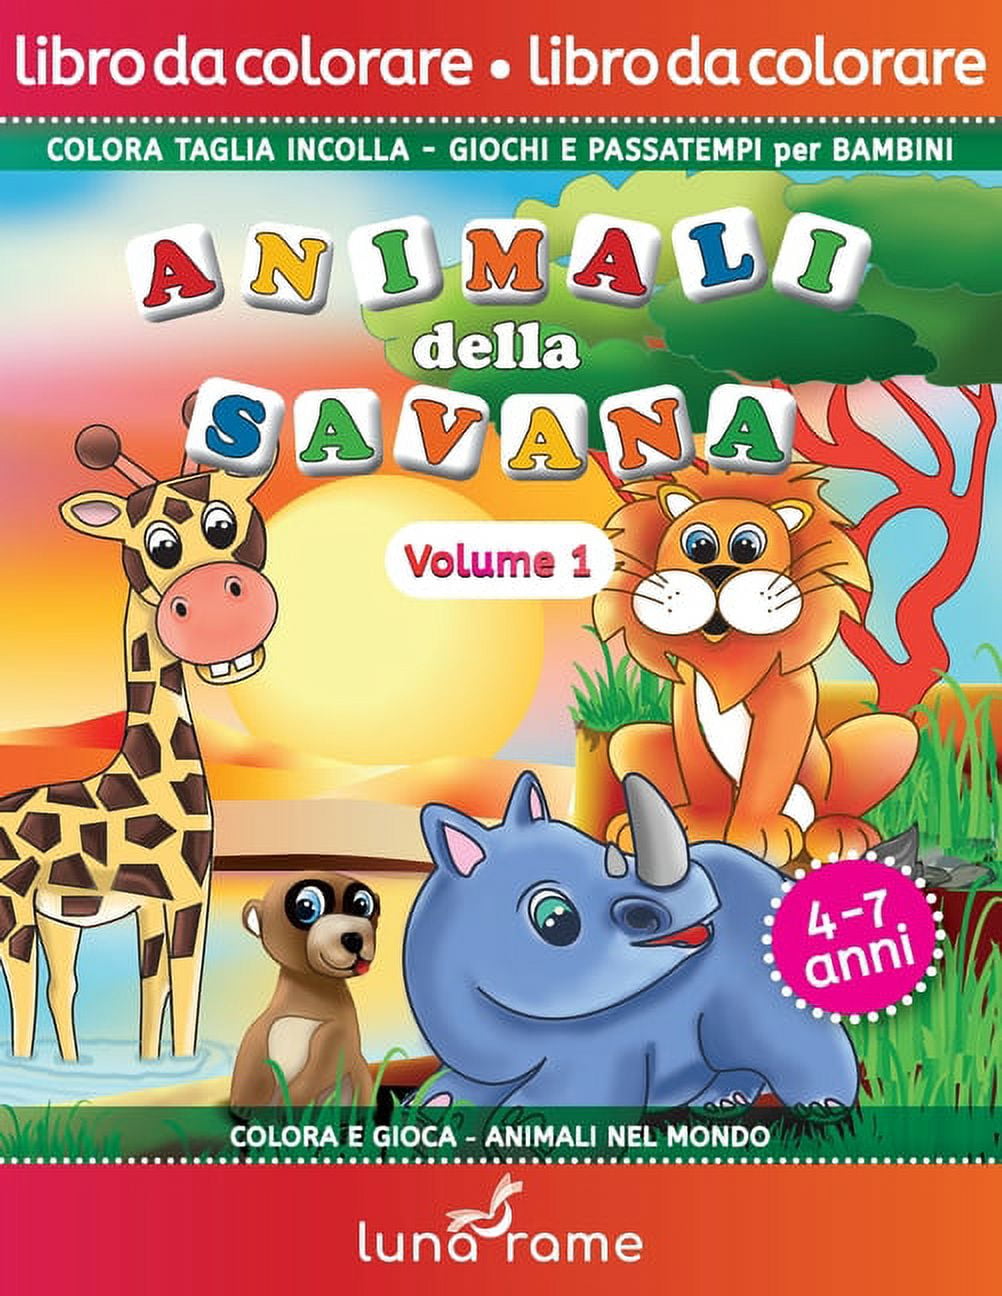 Colora E Gioca - Animali Nel Mondo: Libro da colorare - Animali